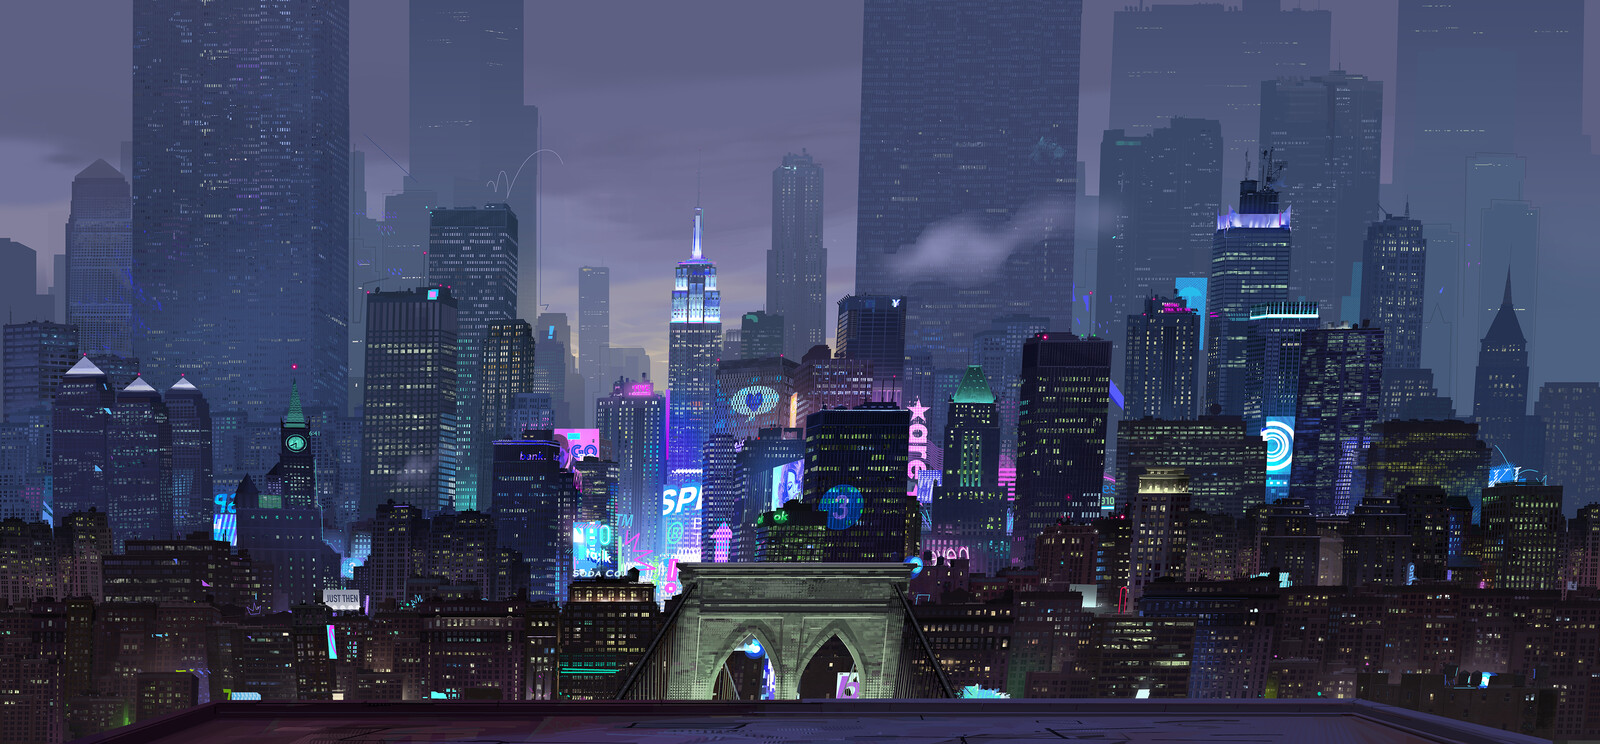 Spider-Man: Into the Spider-verse
Manhattan